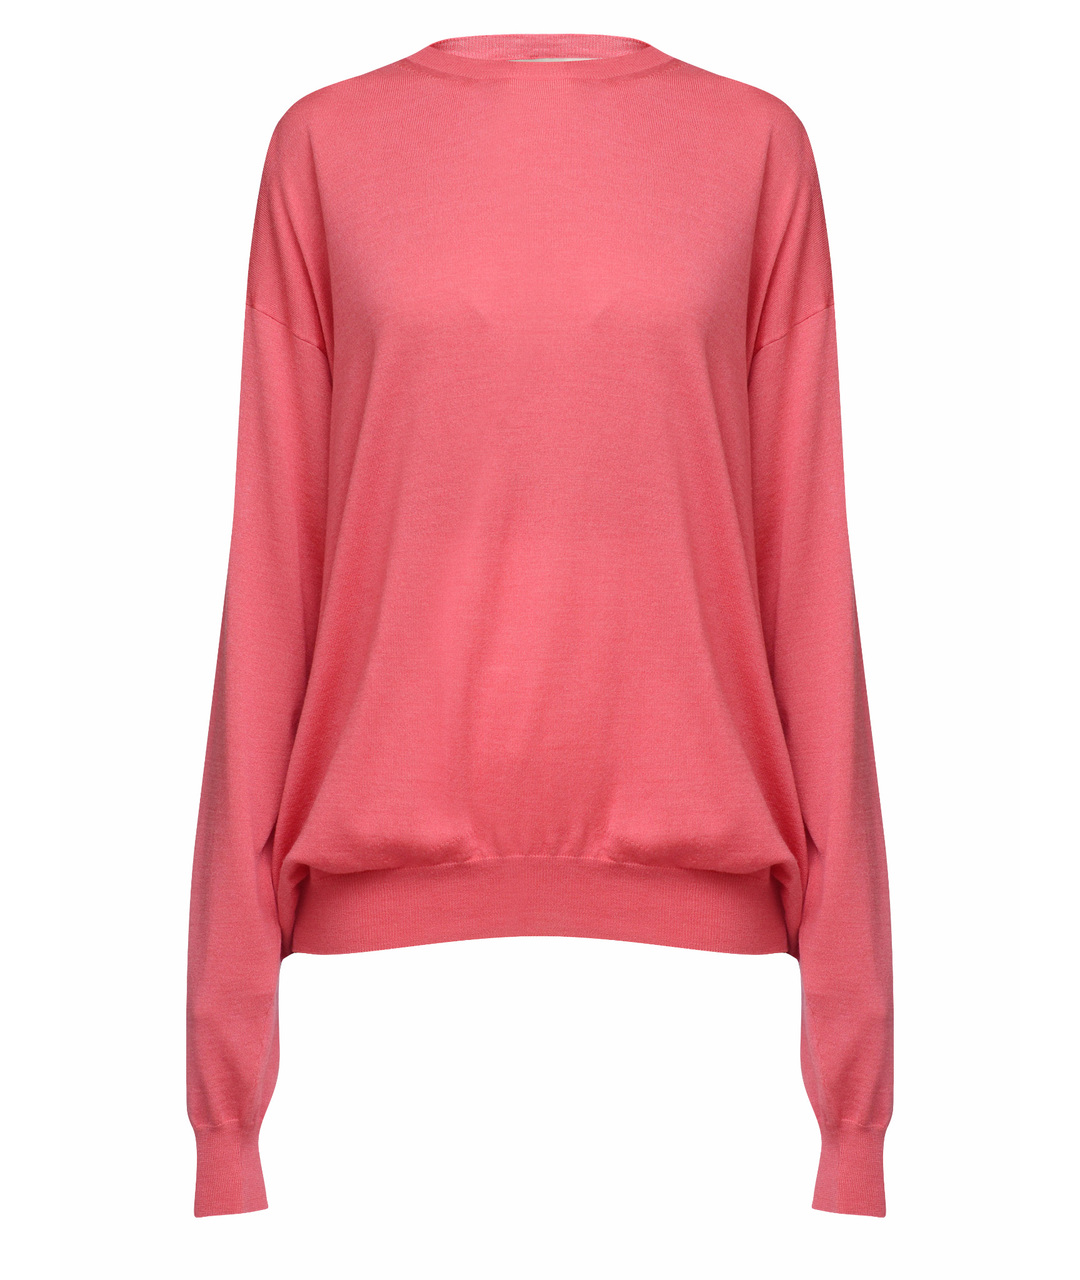 STELLA MCCARTNEY Розовый шерстяной джемпер / свитер, фото 1